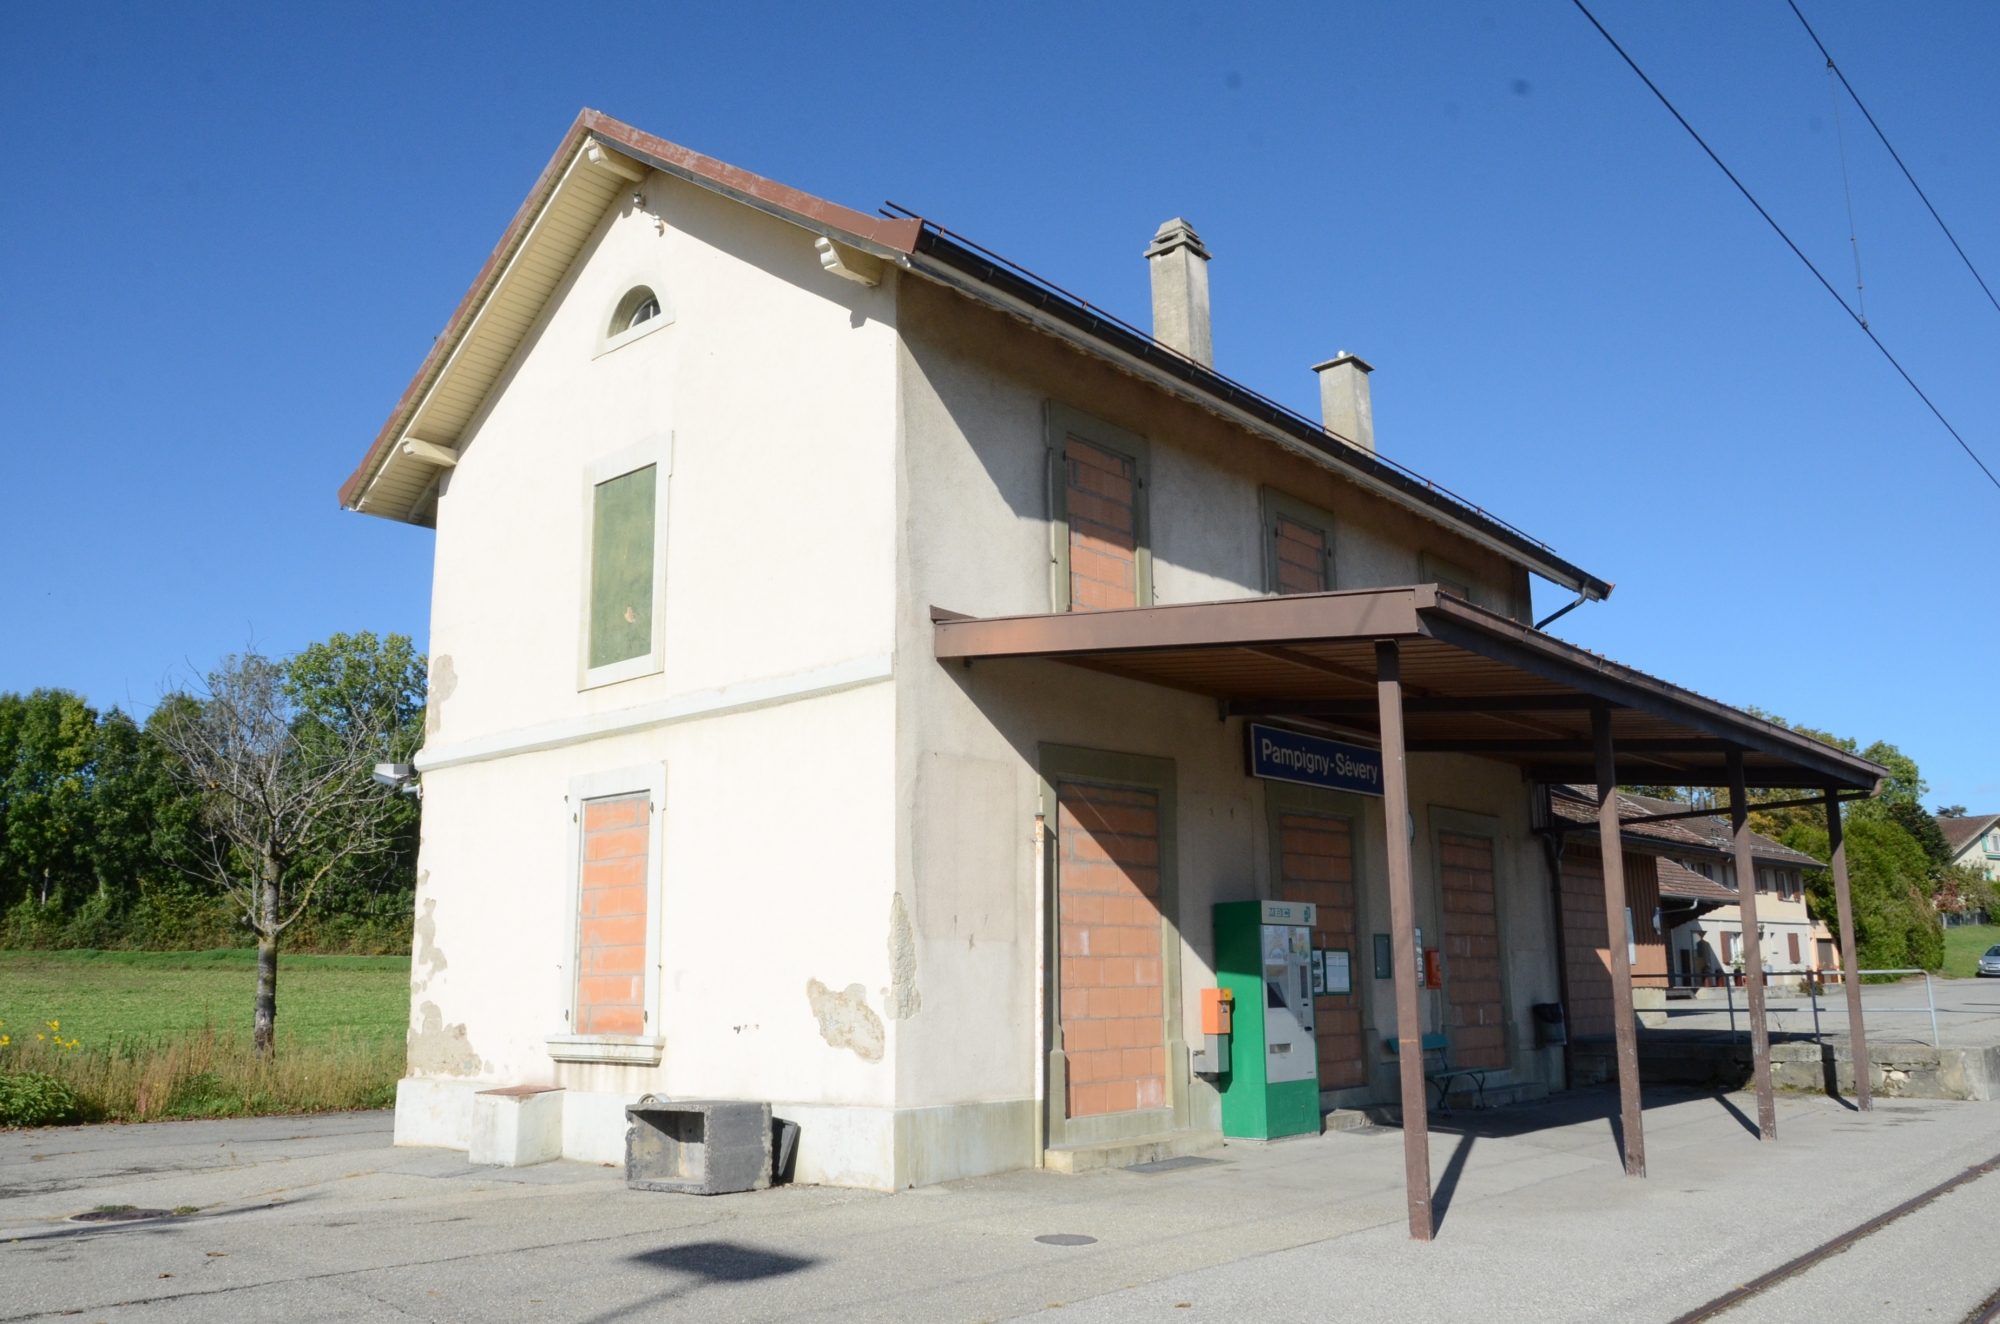 La gare de Pampigny-Sévery est au cœur d'un débat émotionnel.